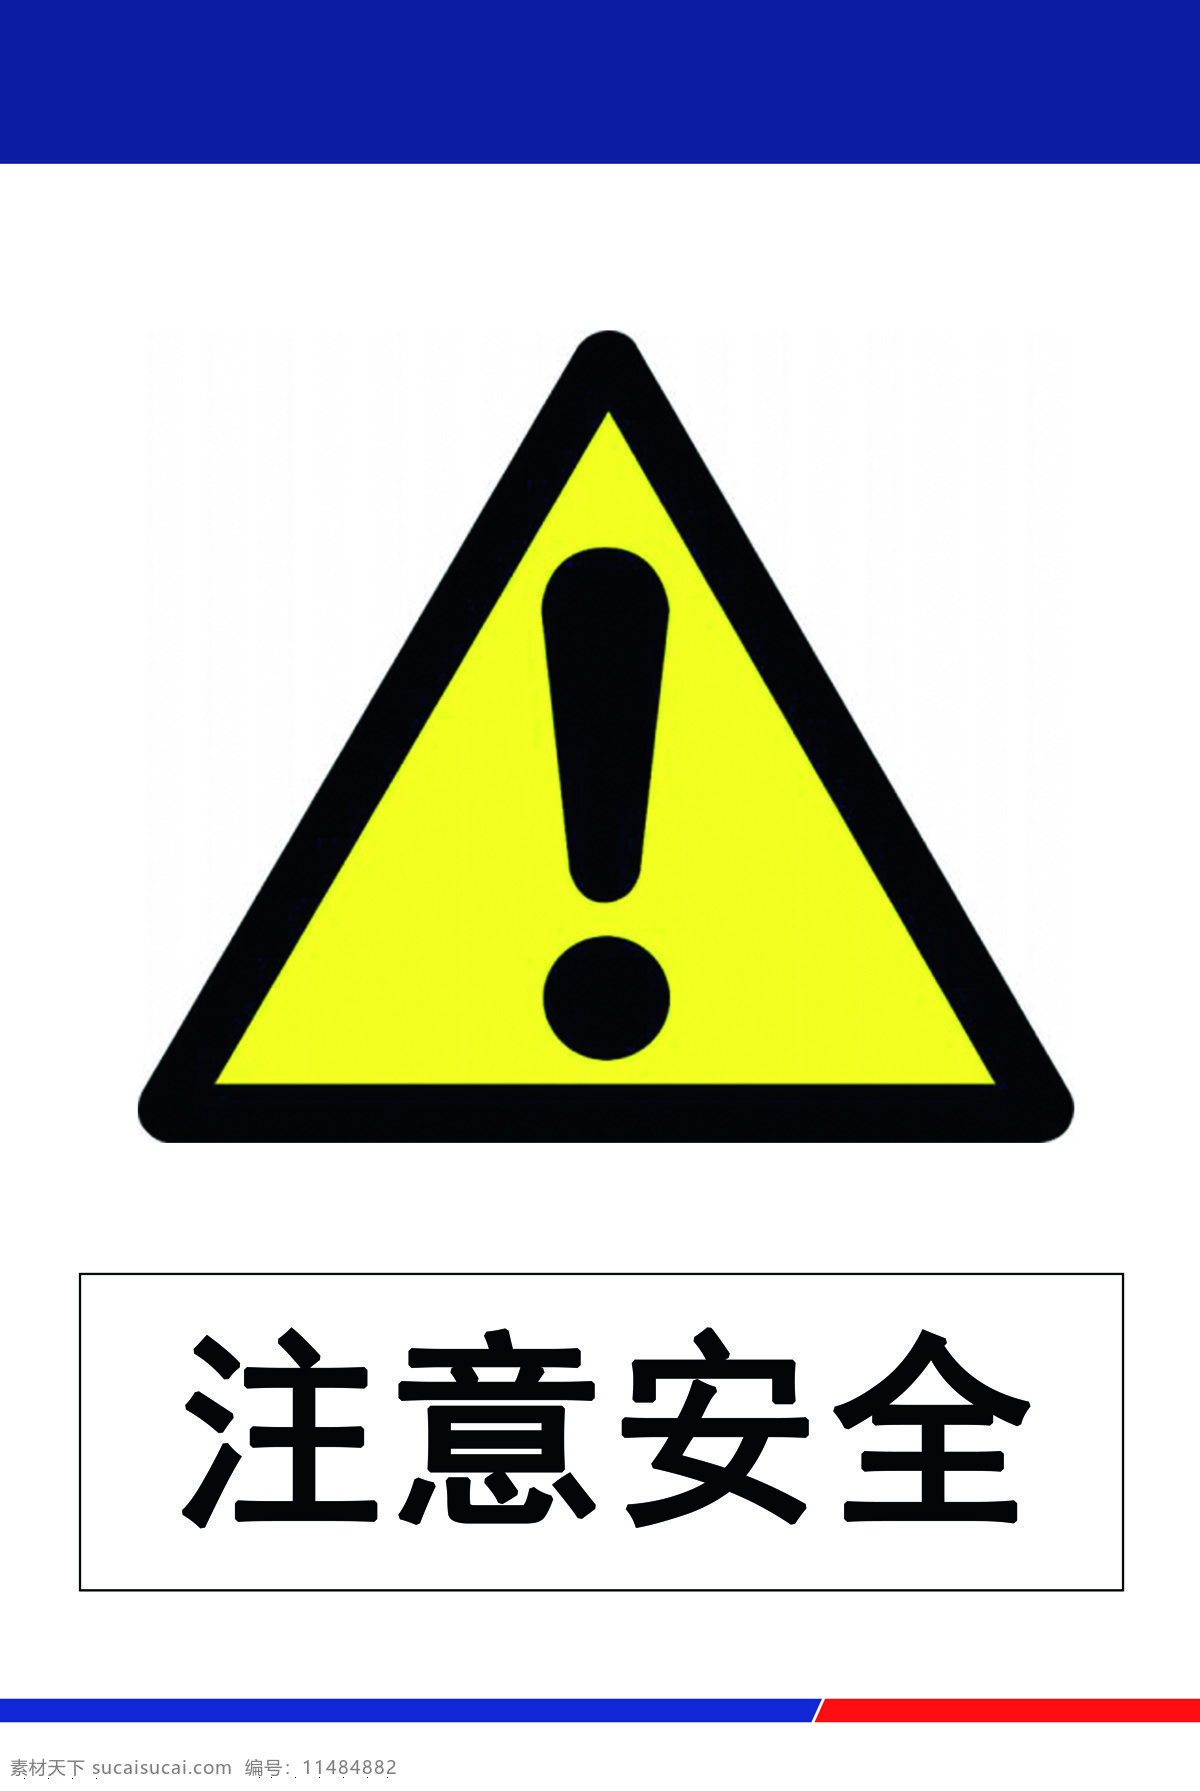 注意安全图片 注意 安全 注意安全 标志 铁建 标志图标 公共标识标志